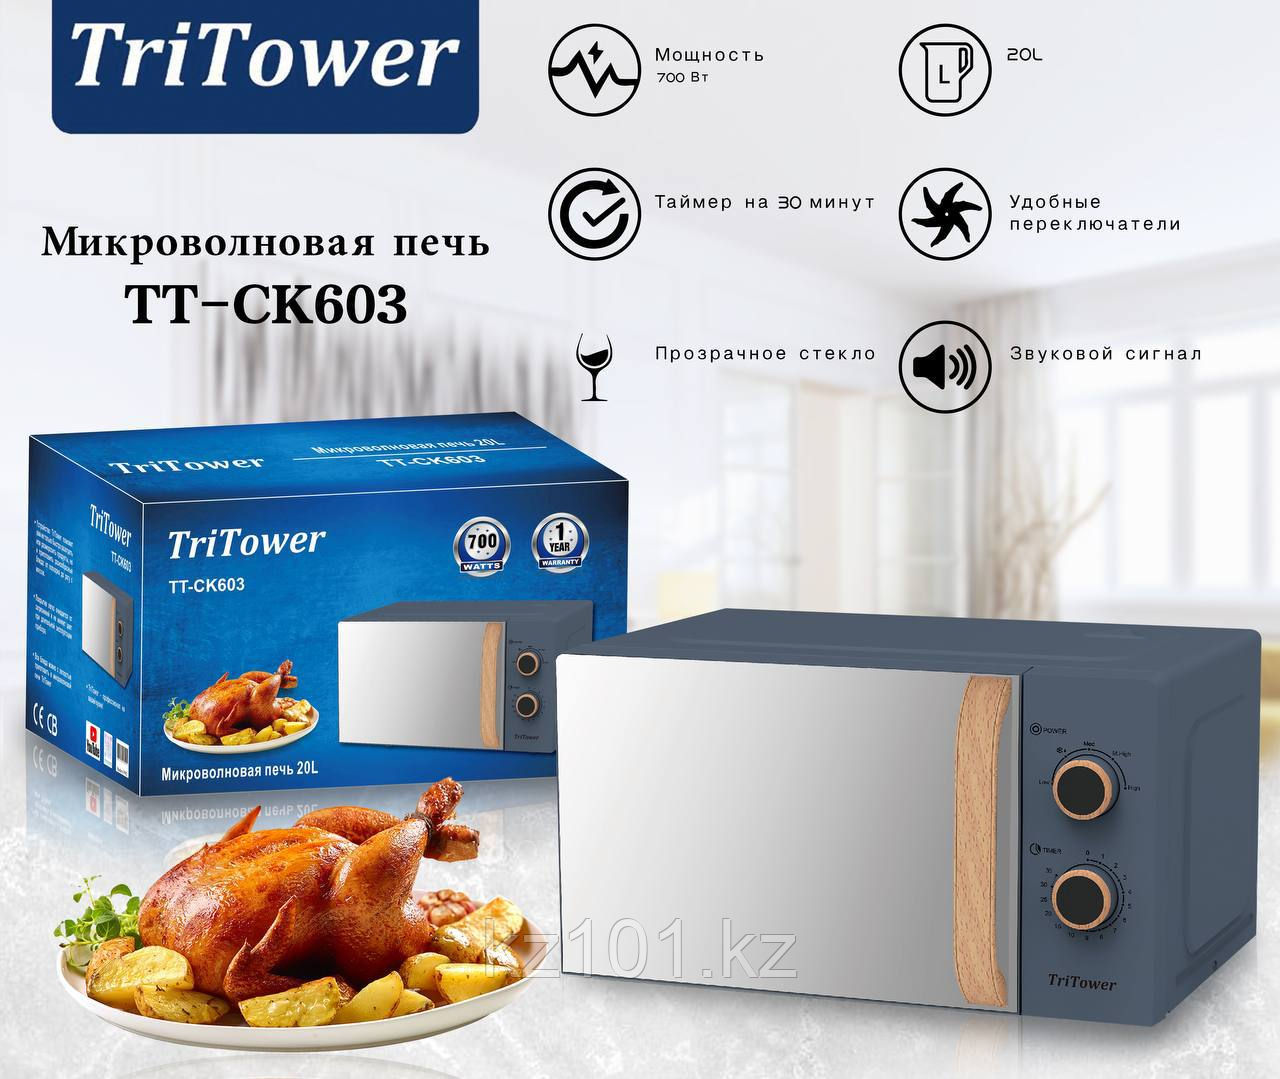 Микроволновая печь TriTower ТТ-СК 603